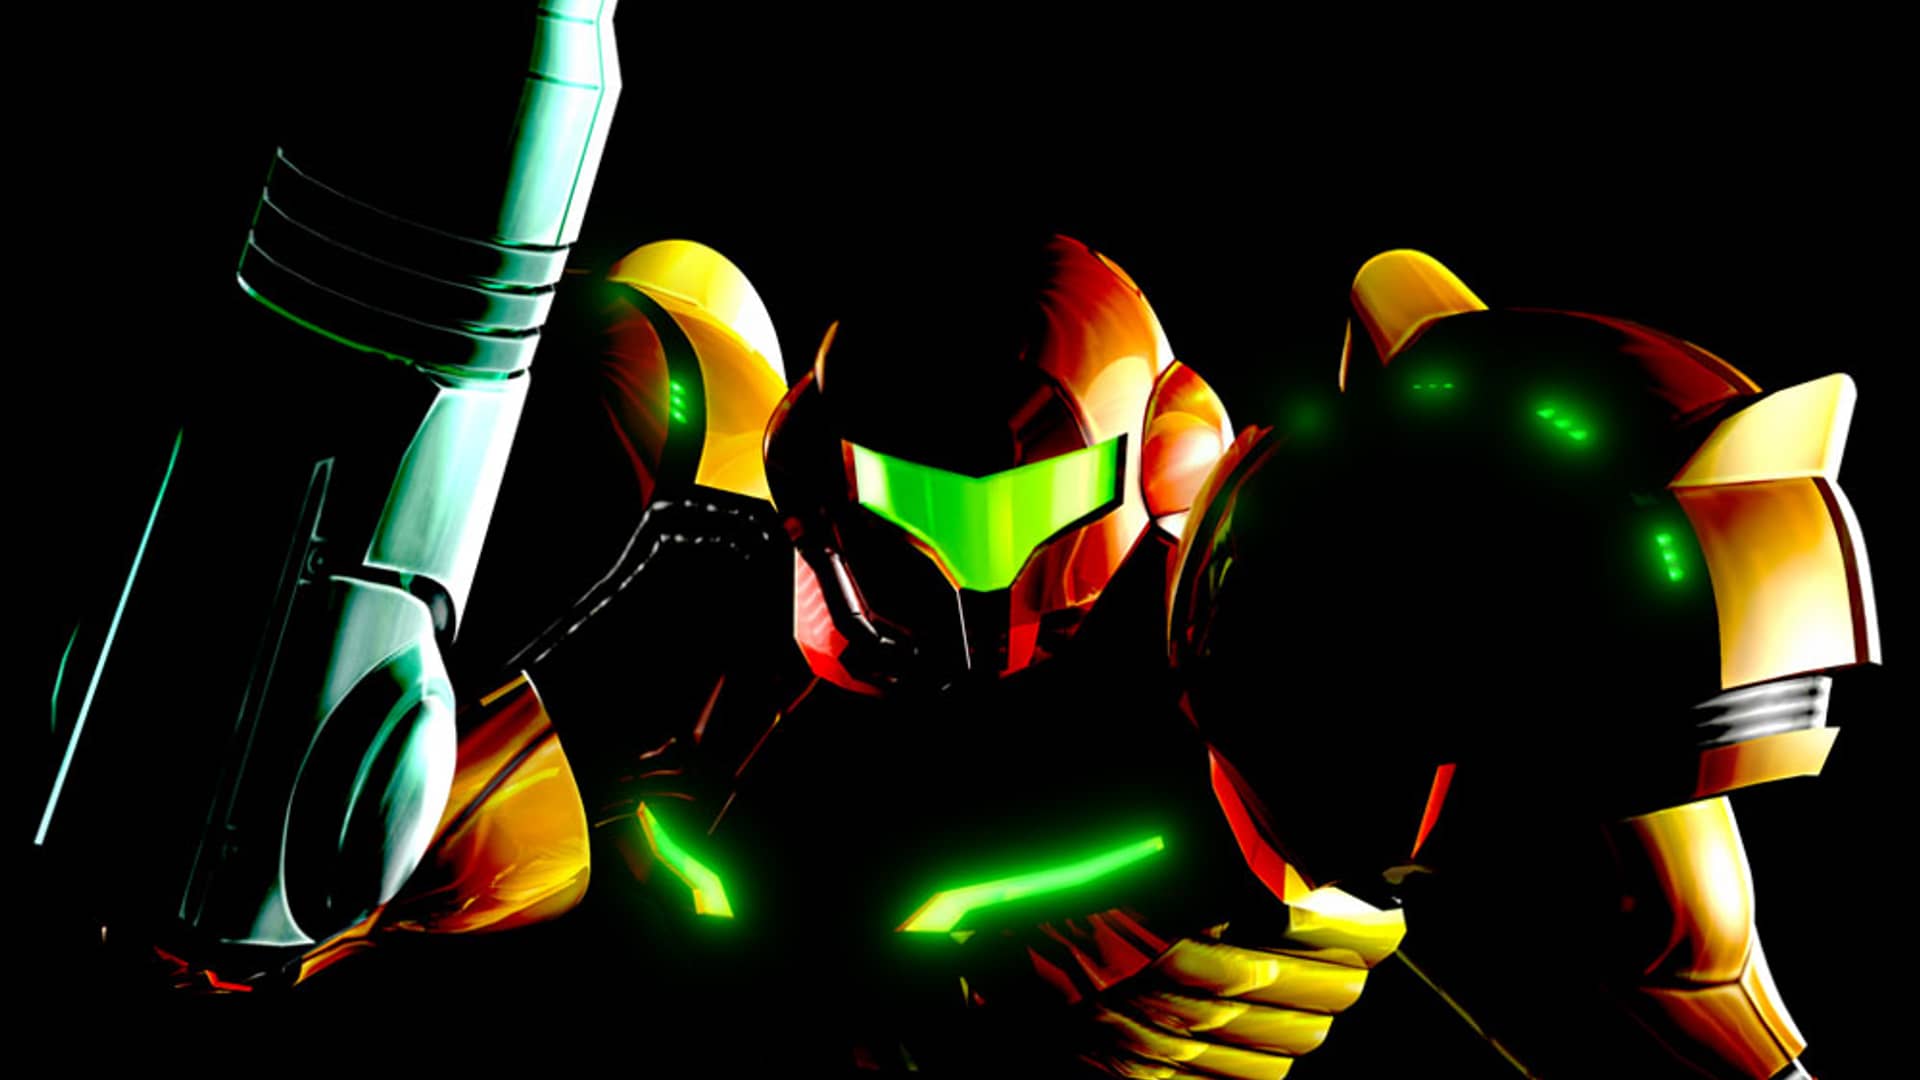 artwork del videojuego metroid prime con su protagonista que es uno de los juegos de gamecube